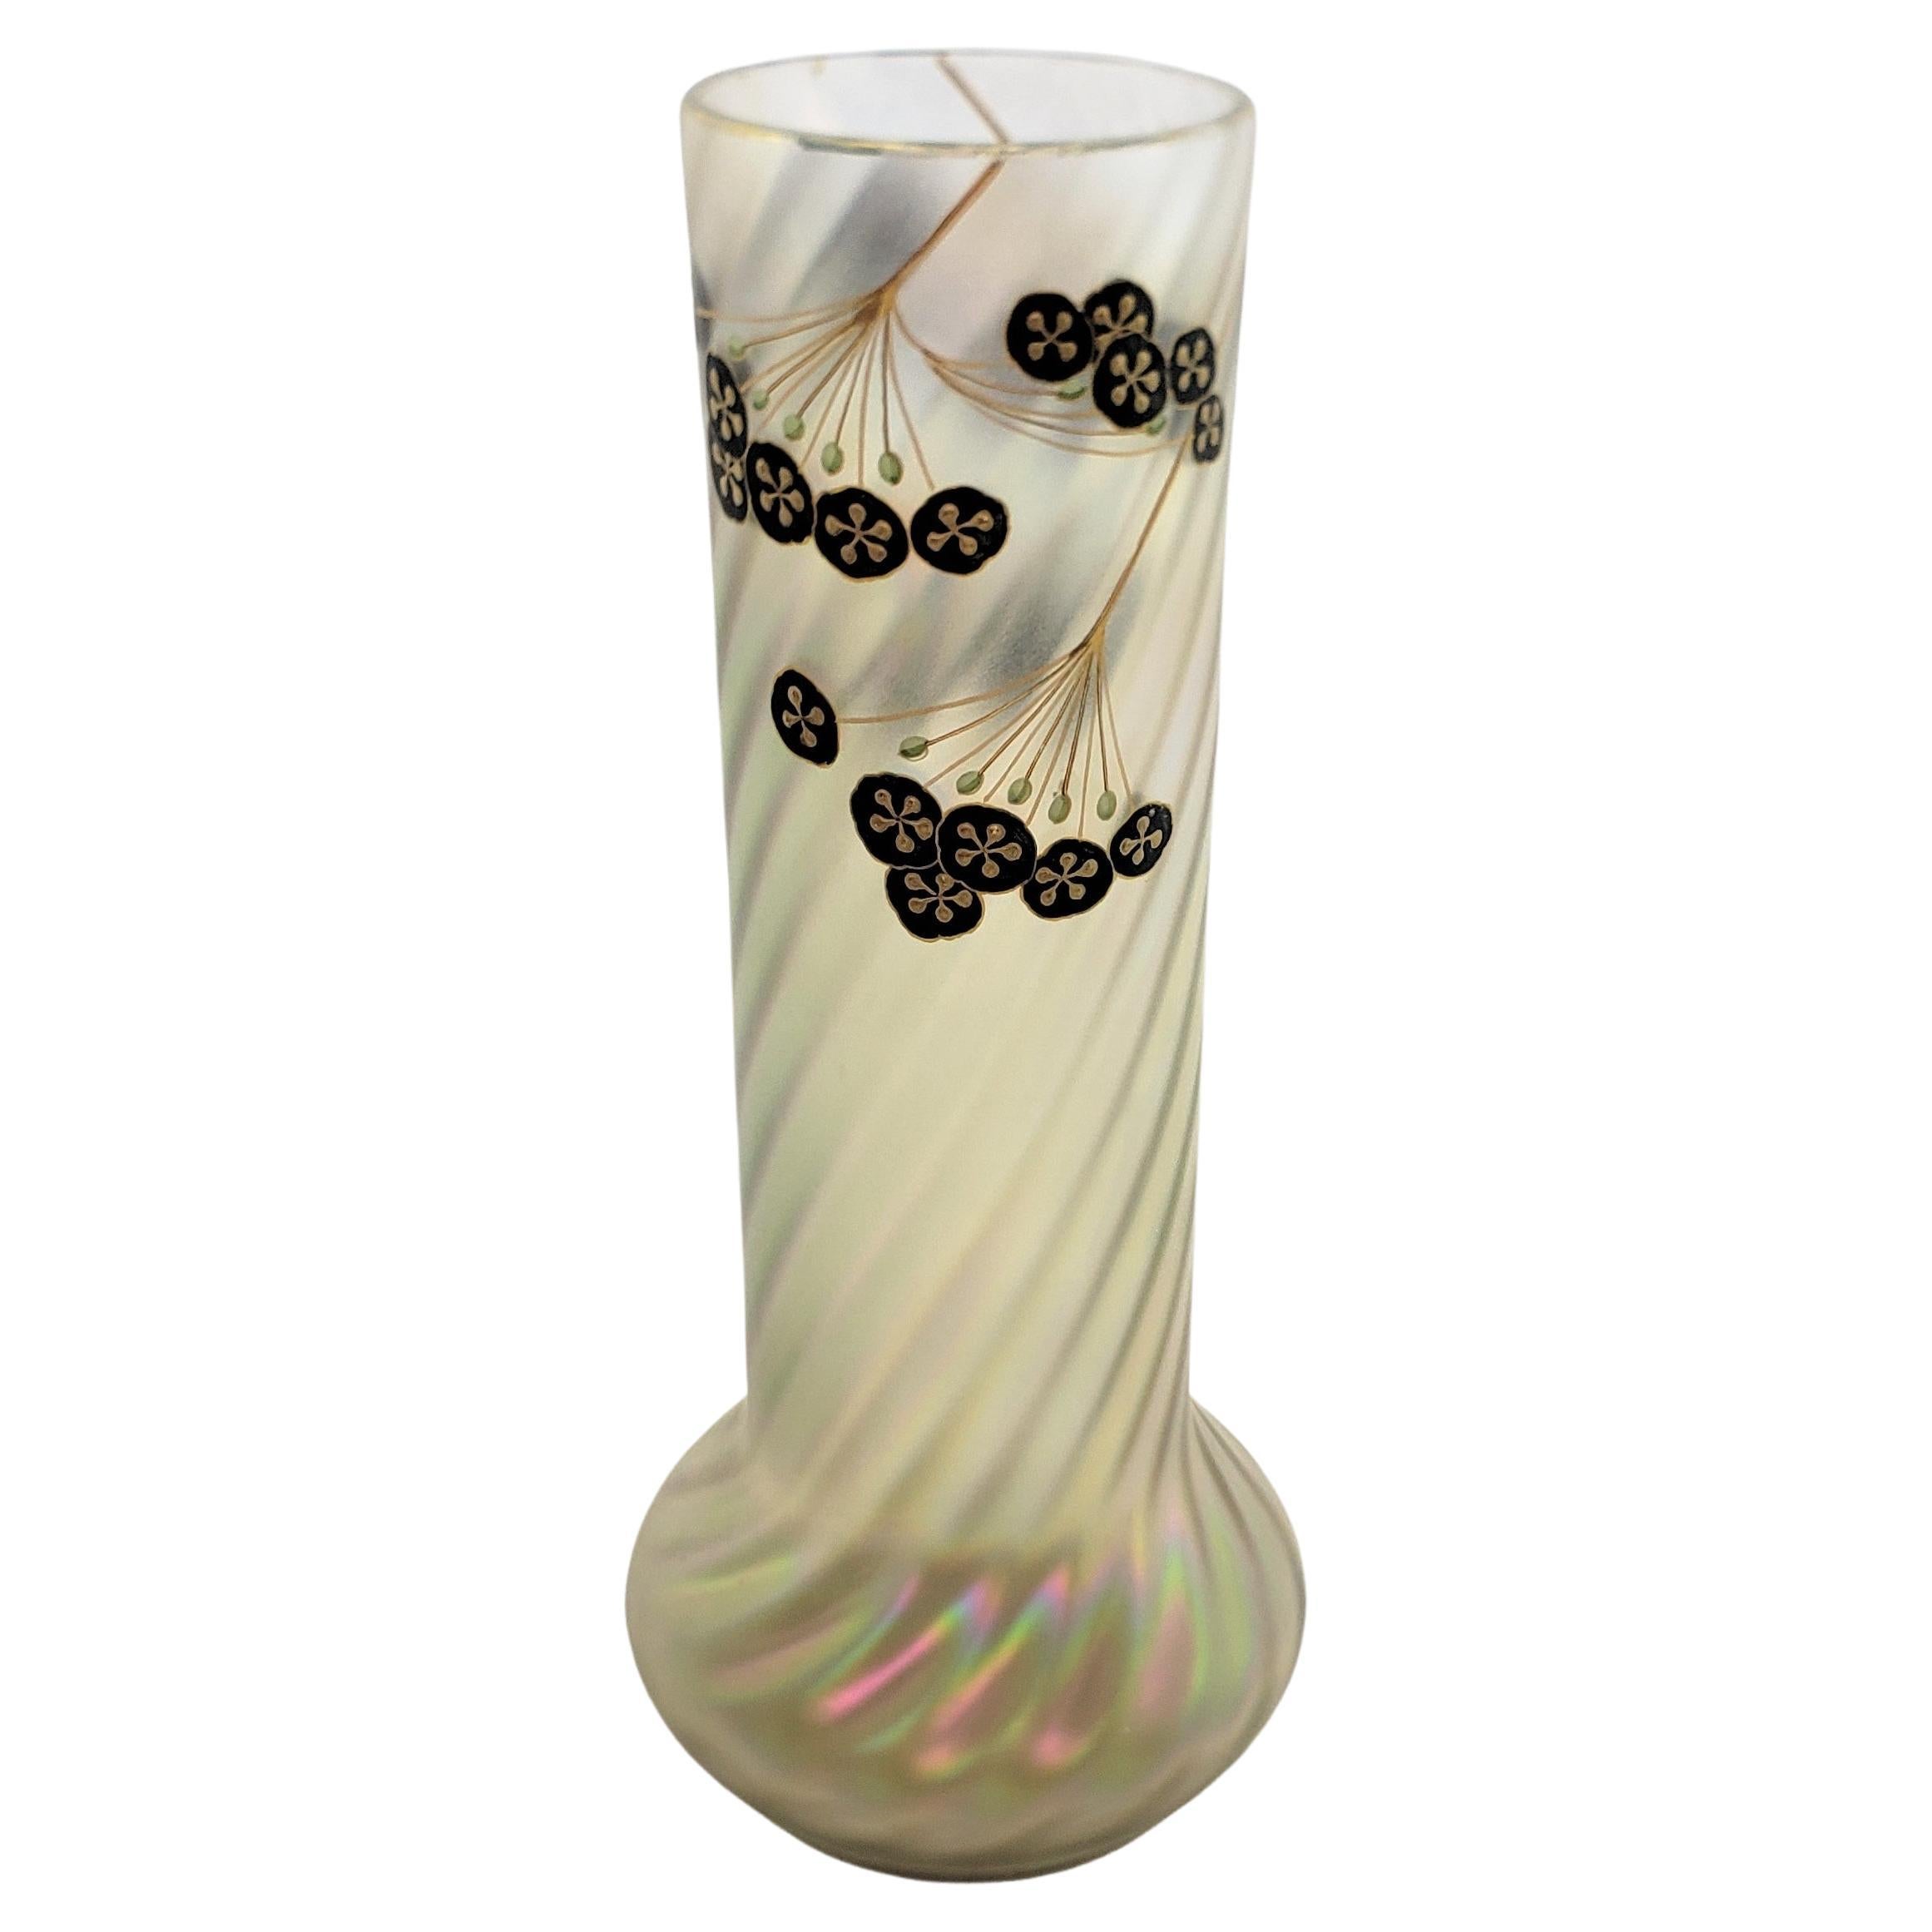 Antique Art Nouveau Iridescent Art Glass Vase with Enamel Floral Decoration